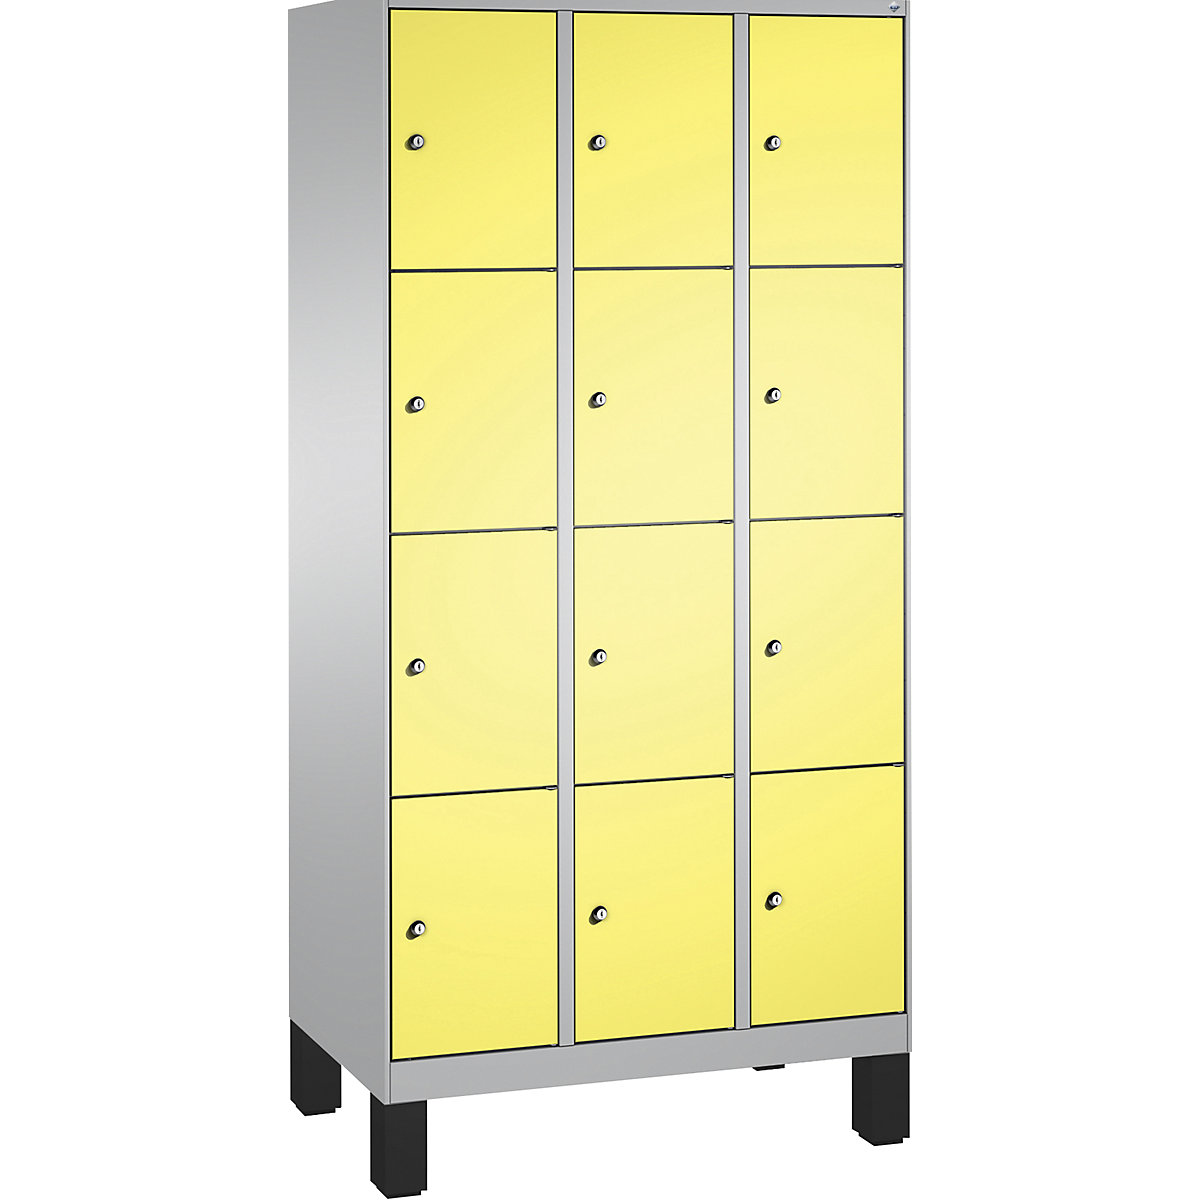 Armoire à casiers sur pieds EVOLO – C+P, 3 compartiments, 4 casiers chacun, largeur compartiments 300 mm, aluminium / jaune soufre-14